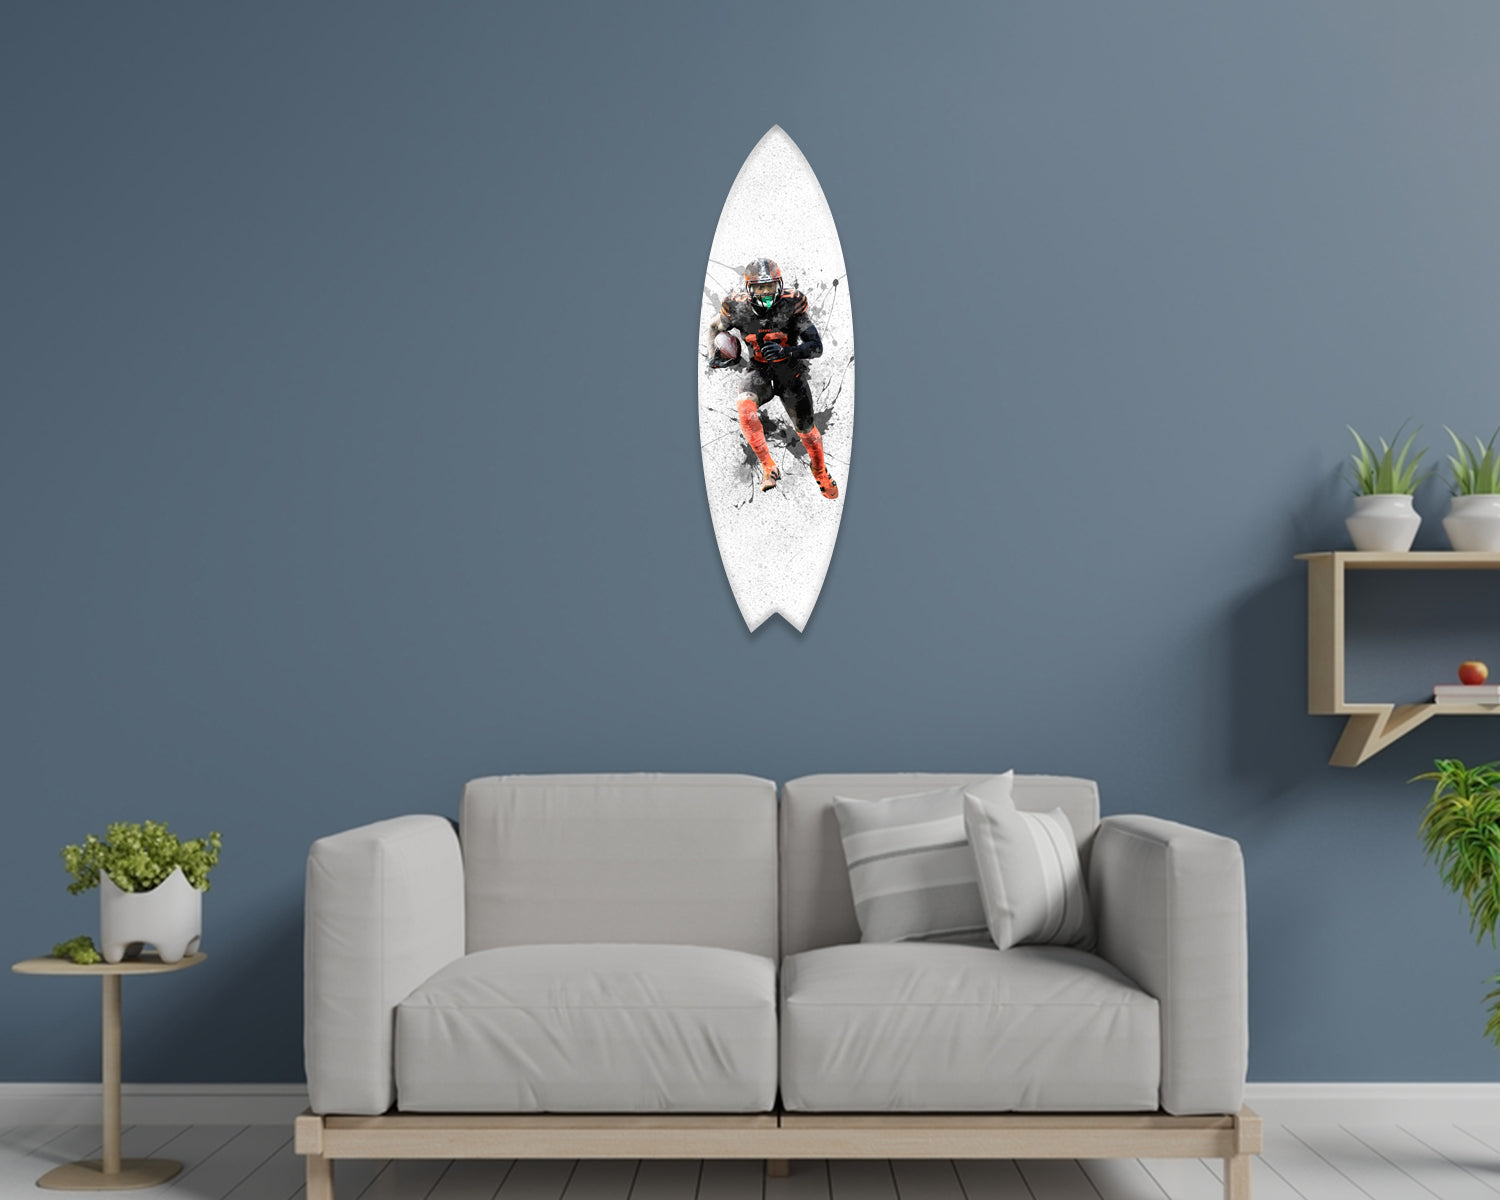 Odell Beckham Jr Acrylic Surfboard Wall Art 